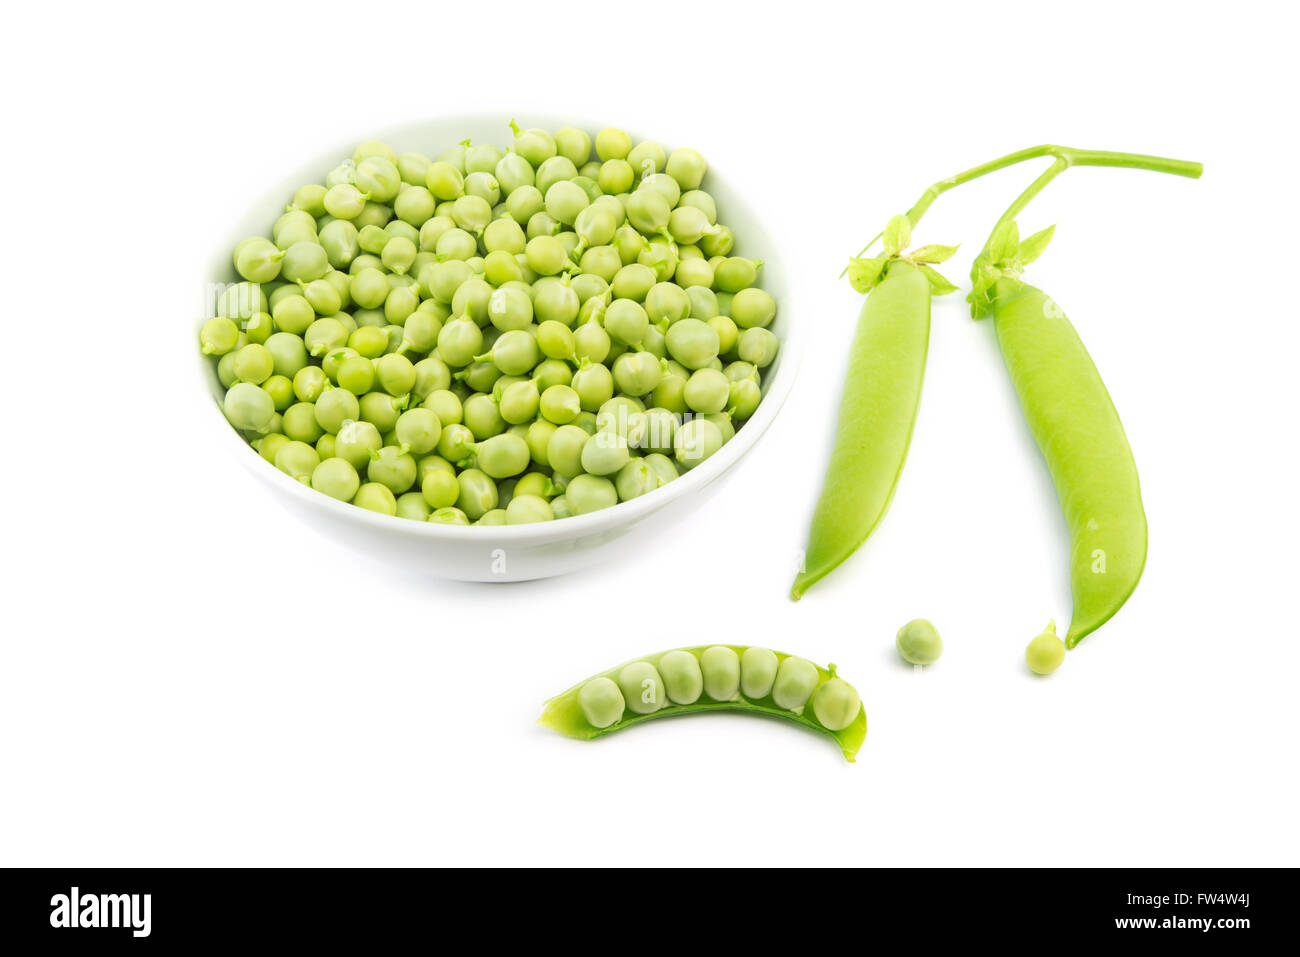 raw green peas bowl on white background Stock Photo